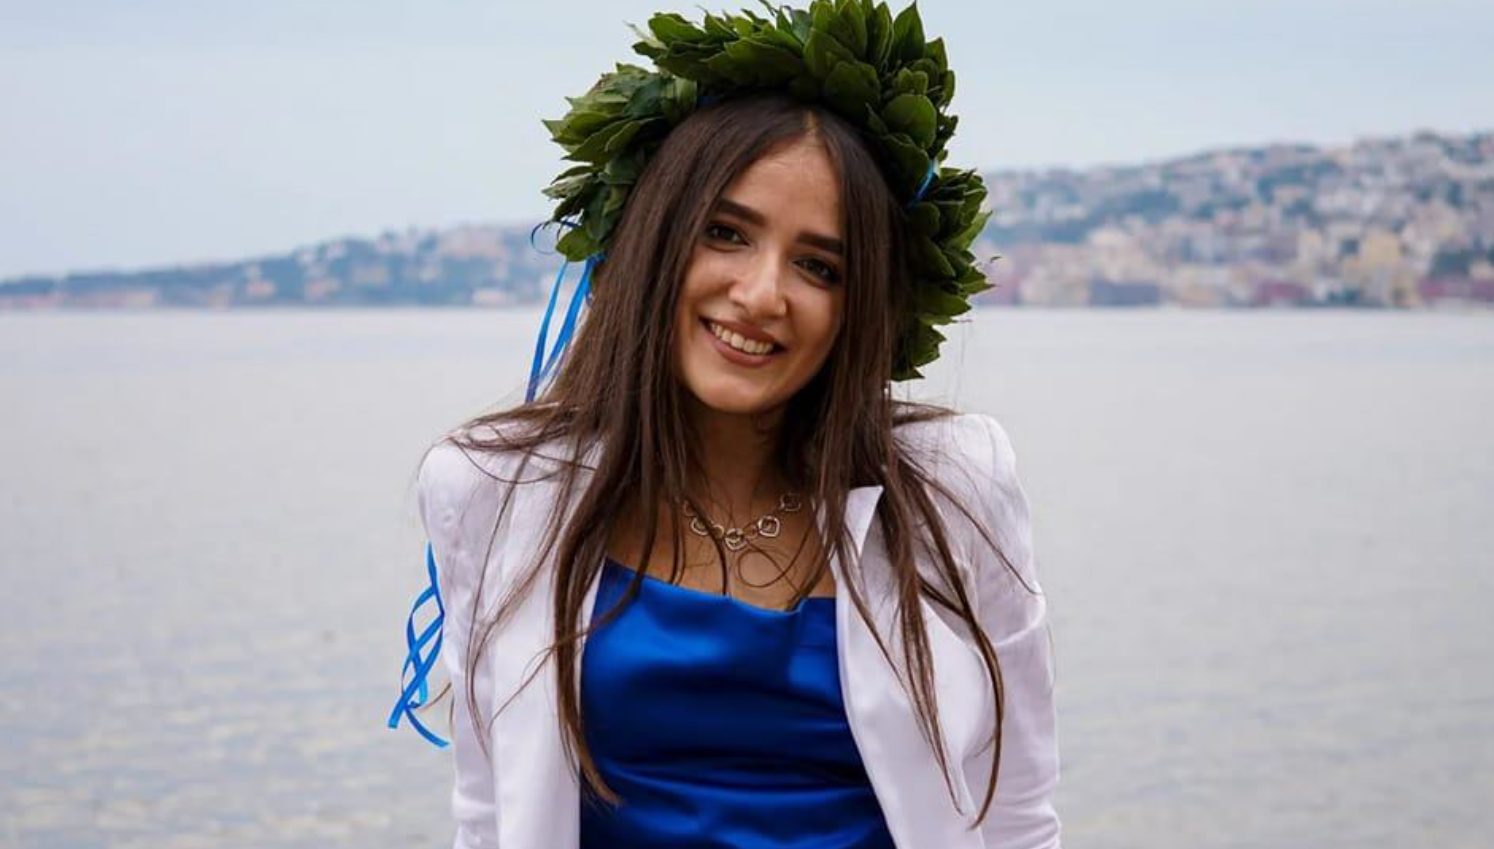 Rita Granata investita uccisa Napoli donati organi